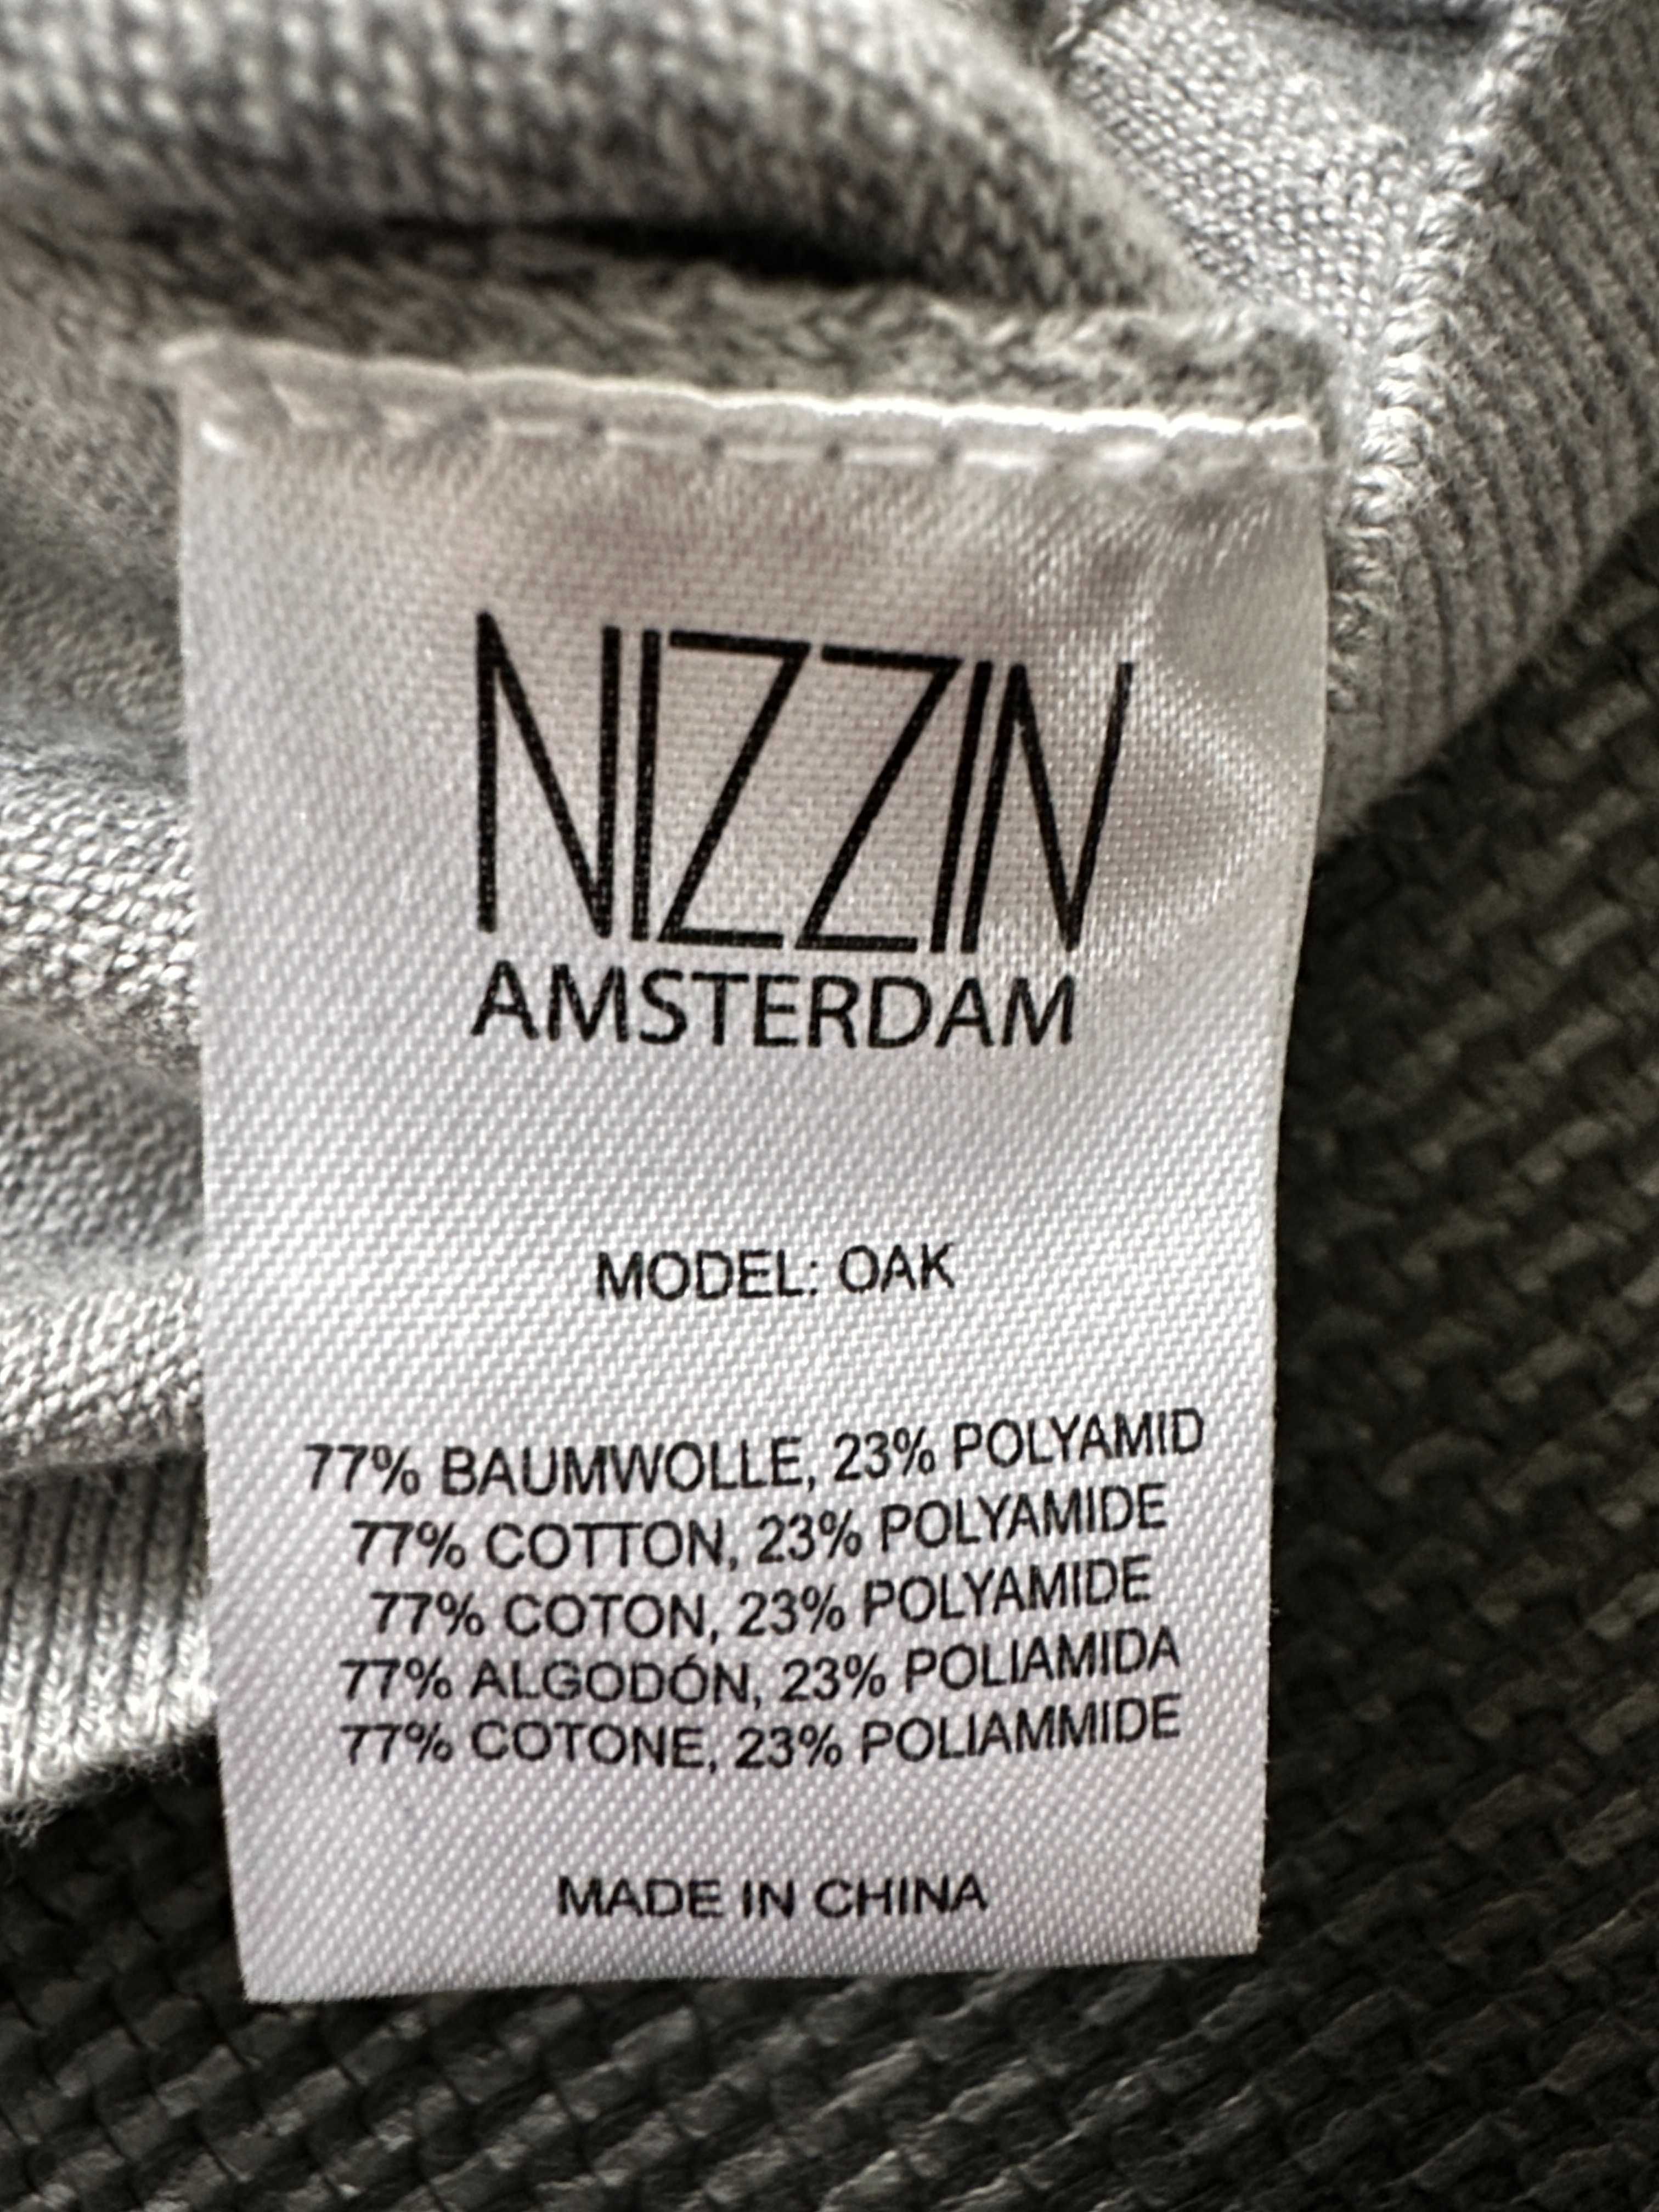 Szary sweter męski V-neck Nizzin Amsterdam rozm. M